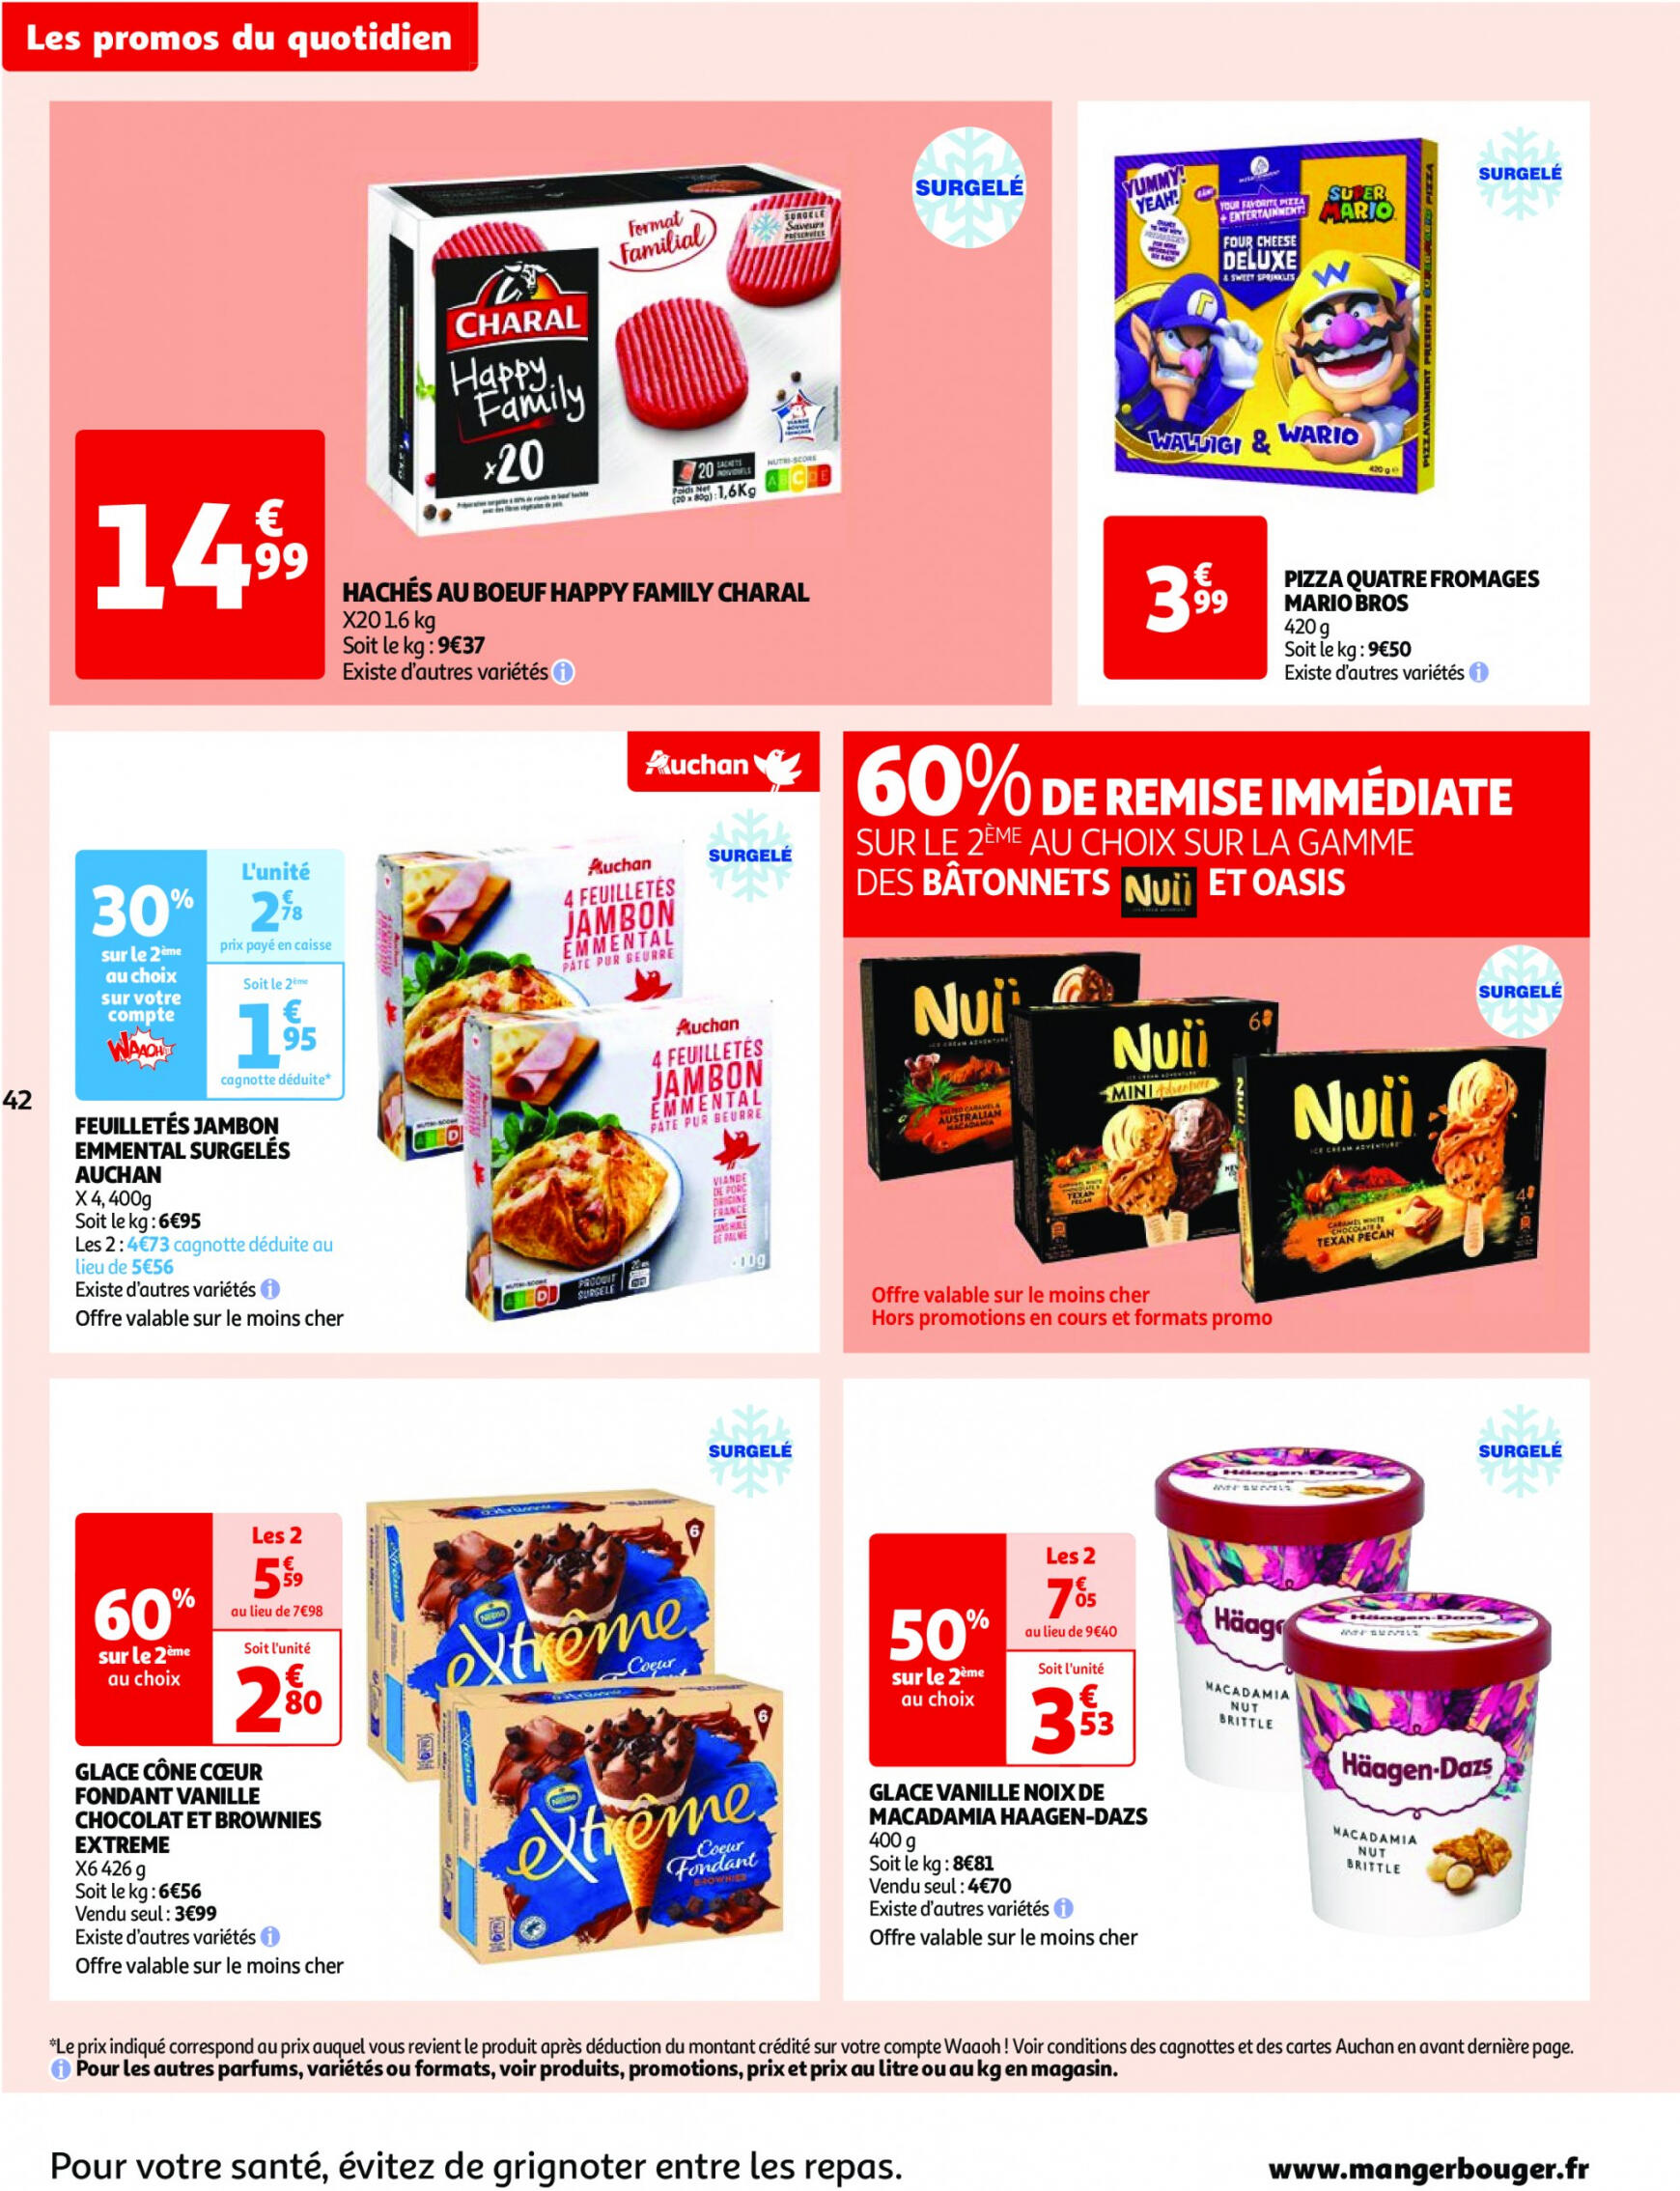 auchan - Prospectus Auchan actuel 30.04. - 06.05. - page: 42